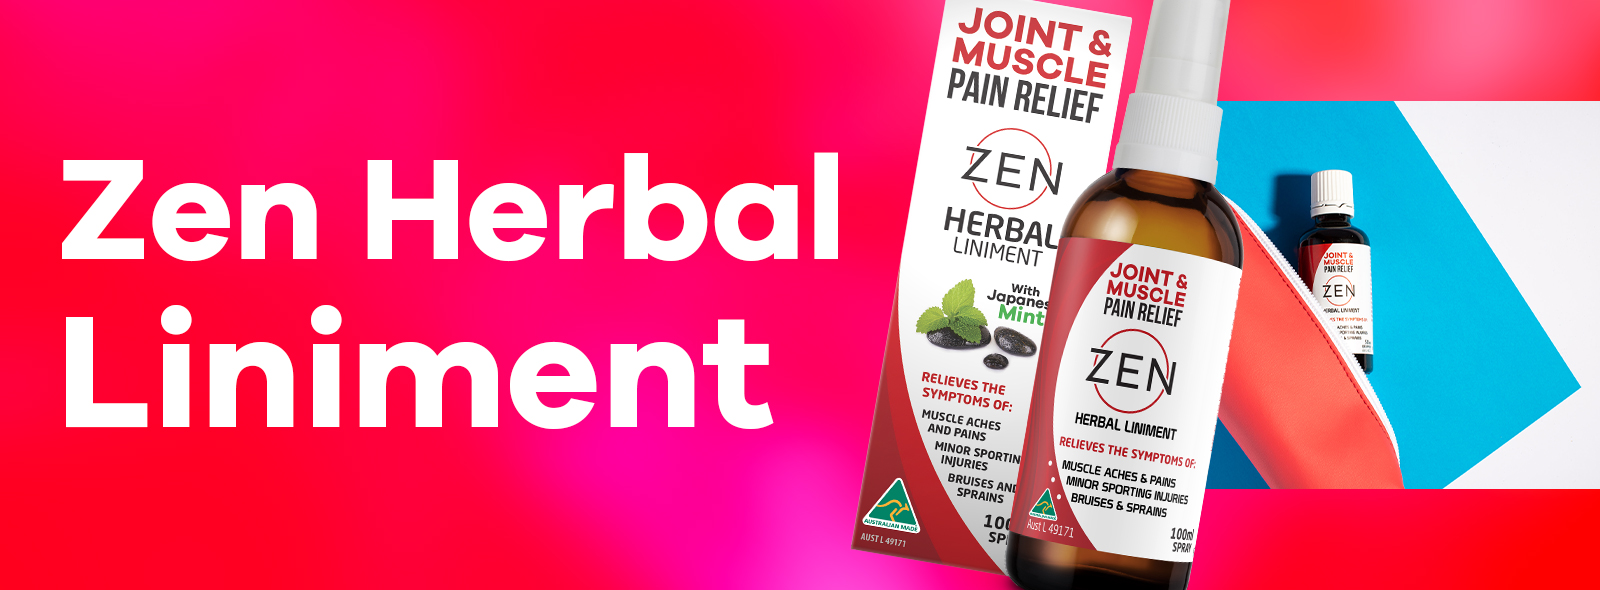 zen liniment banner 2 - Zen Herbal Liniment Spray & Gel